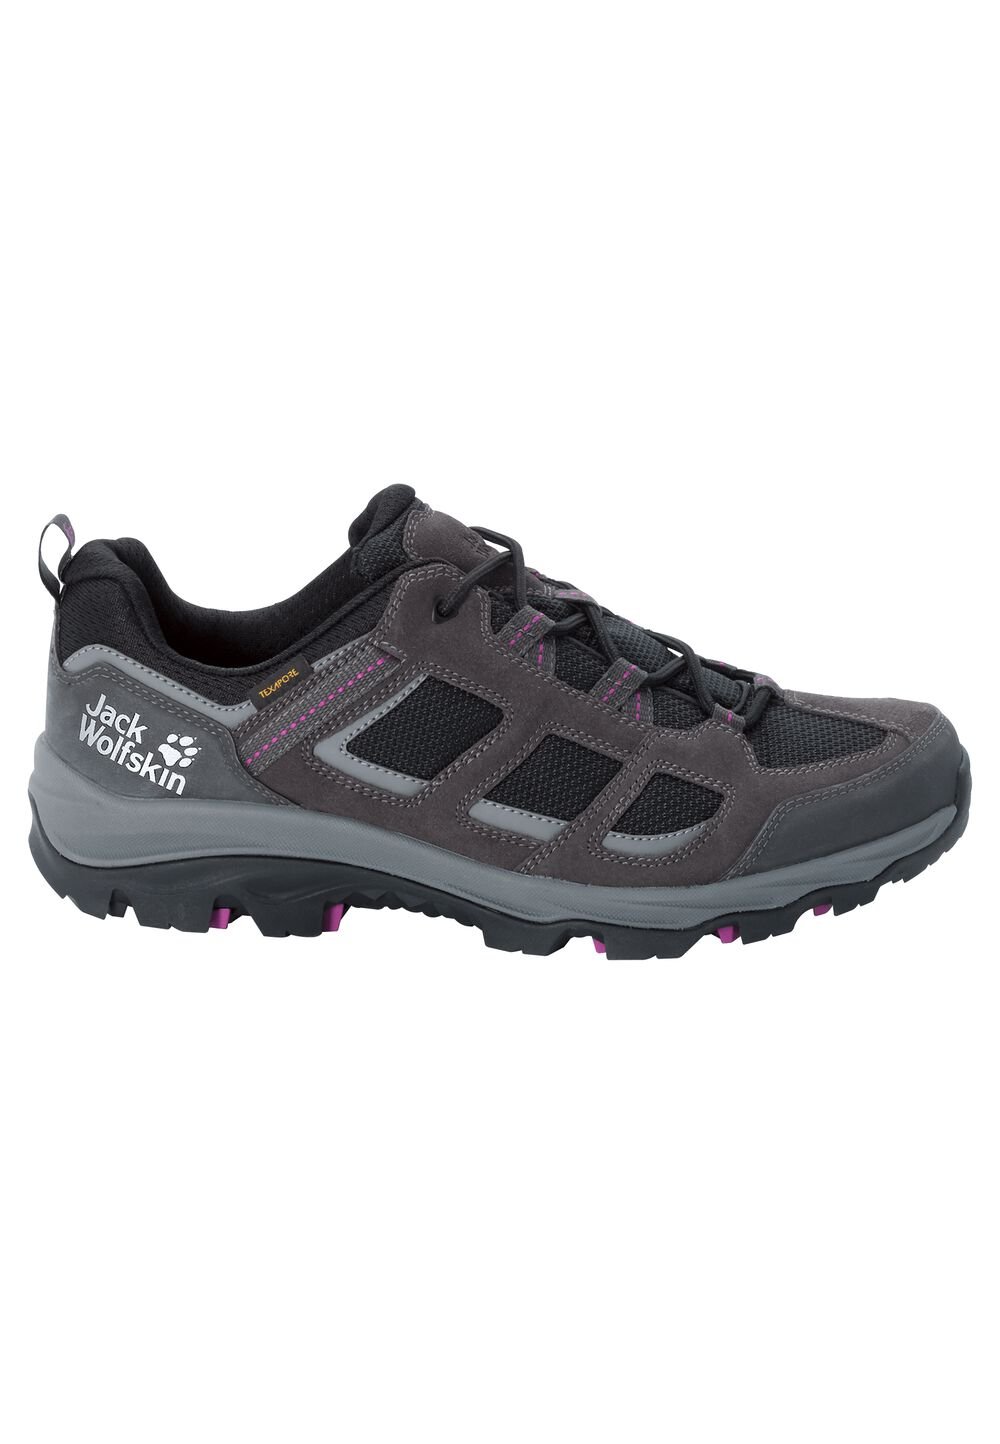 Chaussures de randonnée imperméables femmes Vojo 3 Texapore Low Women 7,5 gris dark steel / purple